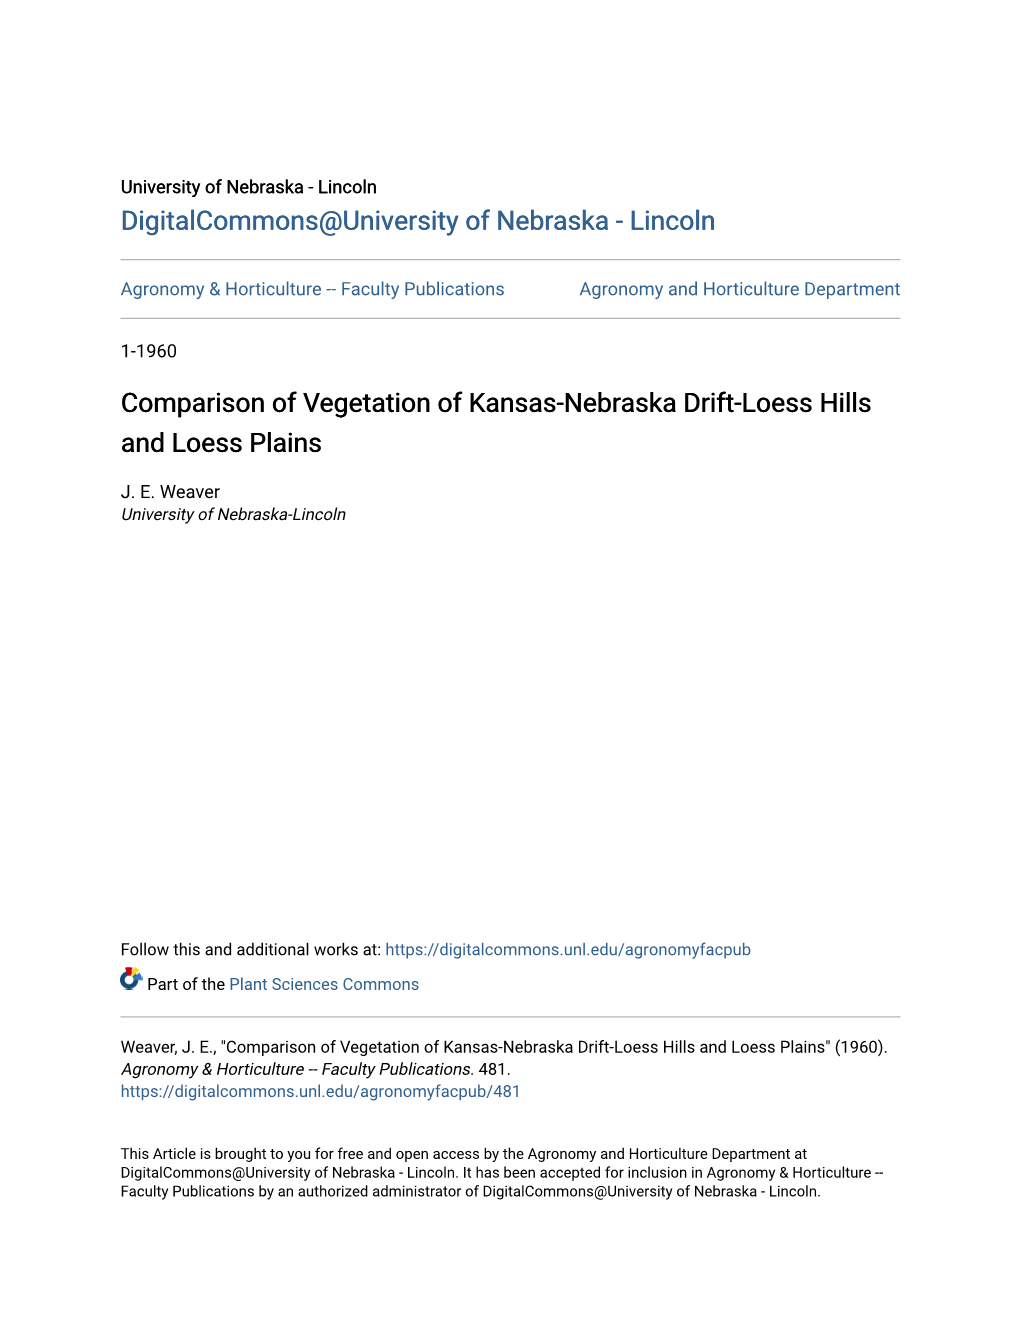 Comparison of Vegetation of Kansas-Nebraska Drift-Loess Hills and Loess Plains